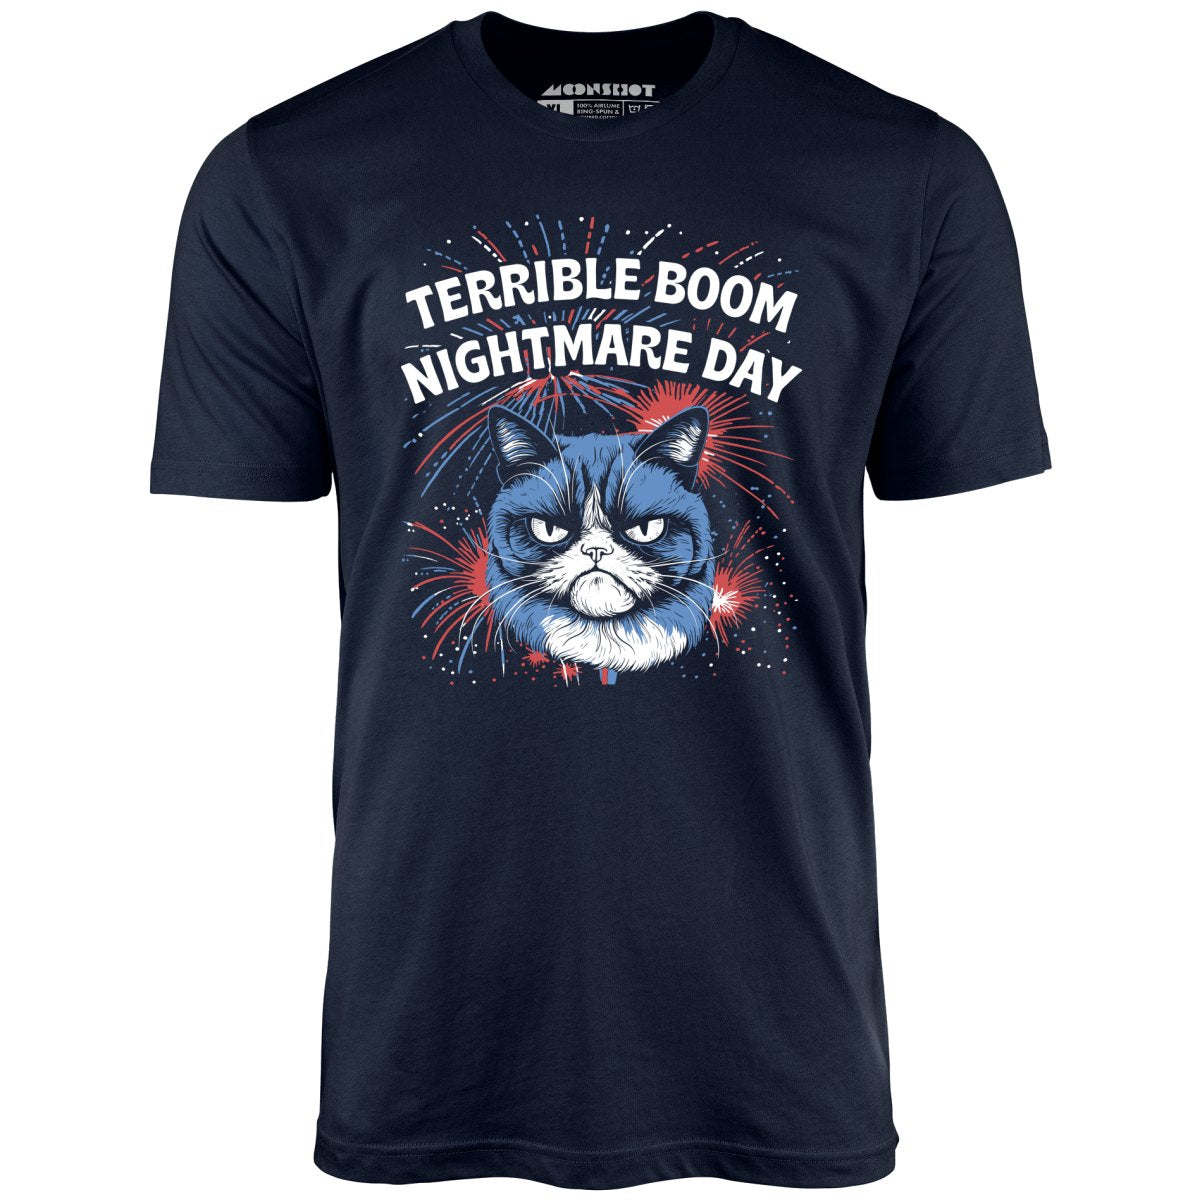 Terrible Boom Nightmare Day - Unisex T-Shirt